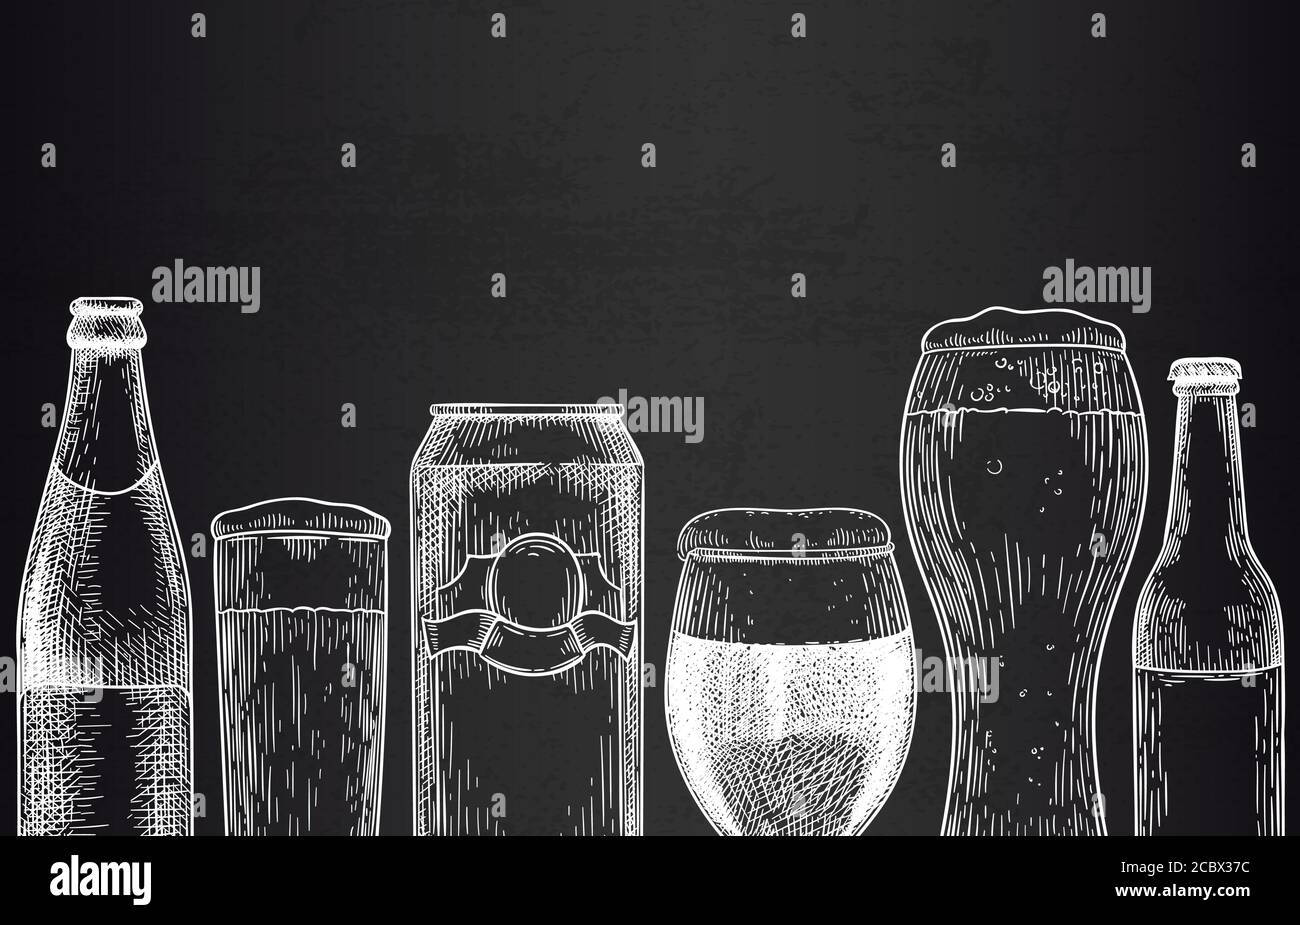 Bierhintergrund. Skizze Biergläser, Tassen und Dosen, Flaschen mit Bier. Hopfen Getränk Design für Förderung Poster Gravur Vektor-Vorlage Stock Vektor